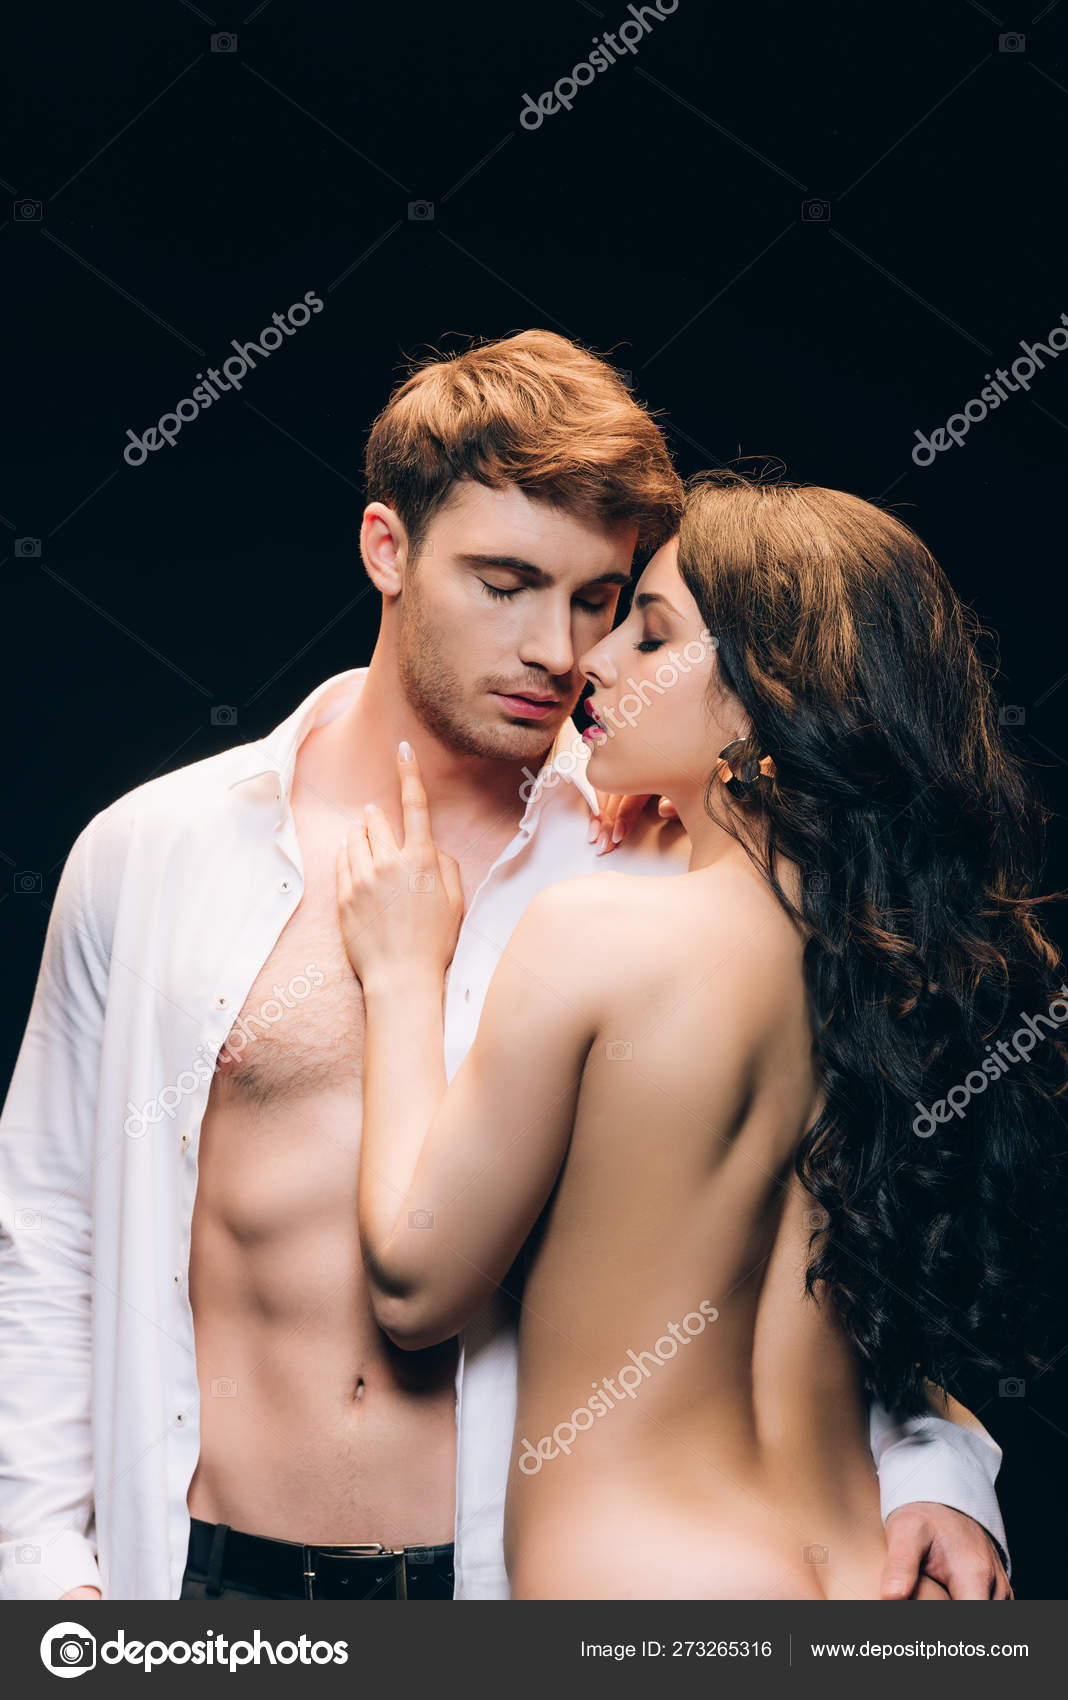 Woman kissing naked